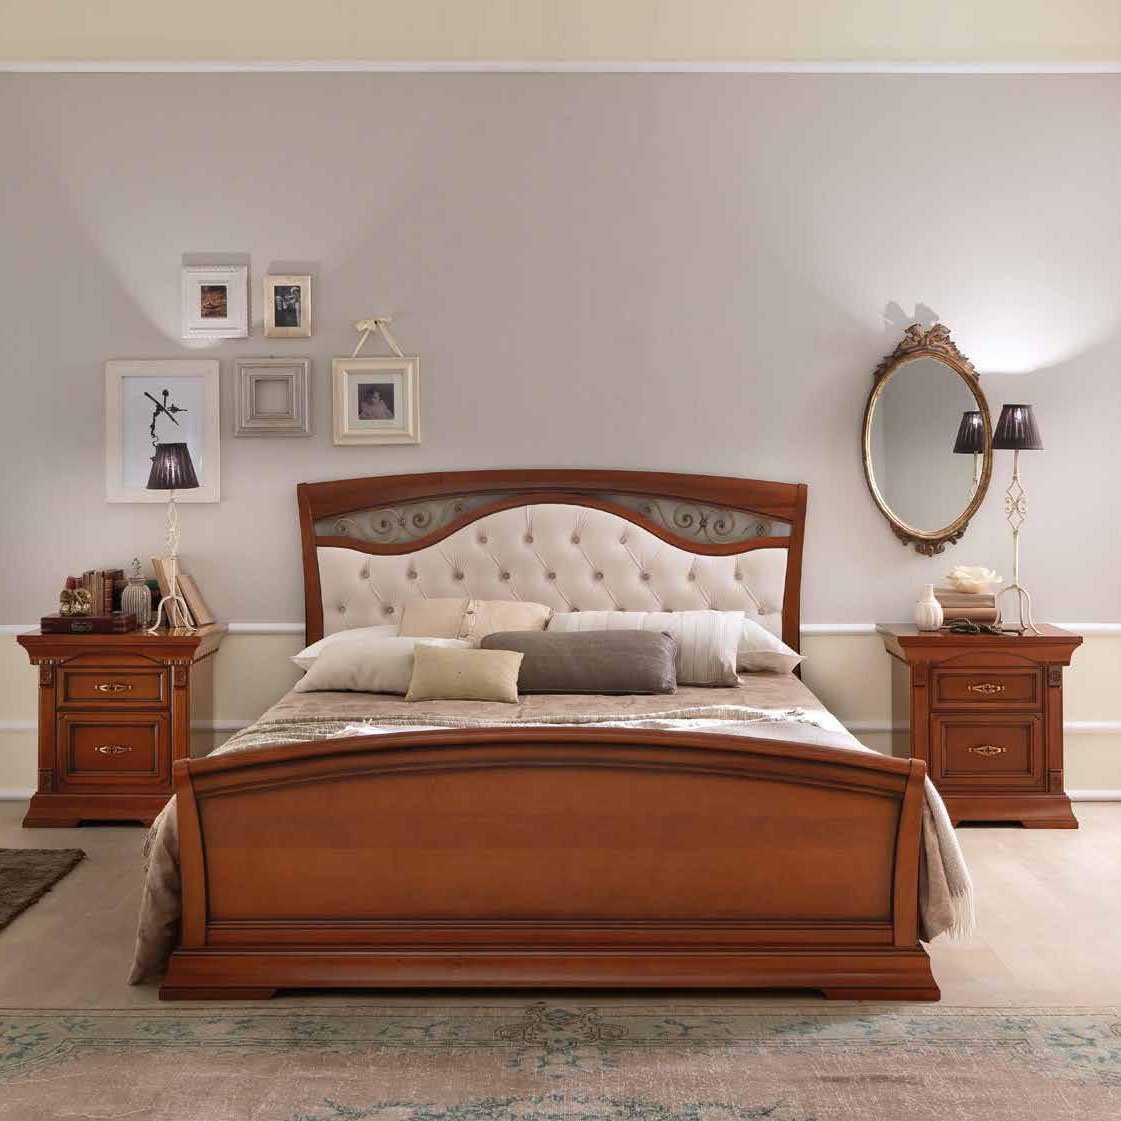 Кровать Prama Palazzo Ducale ciliegio, двуспальная, с мягким изголовьем, с ковкой, цвет: вишня, 180x200 см (71CI65LT)71CI65LT